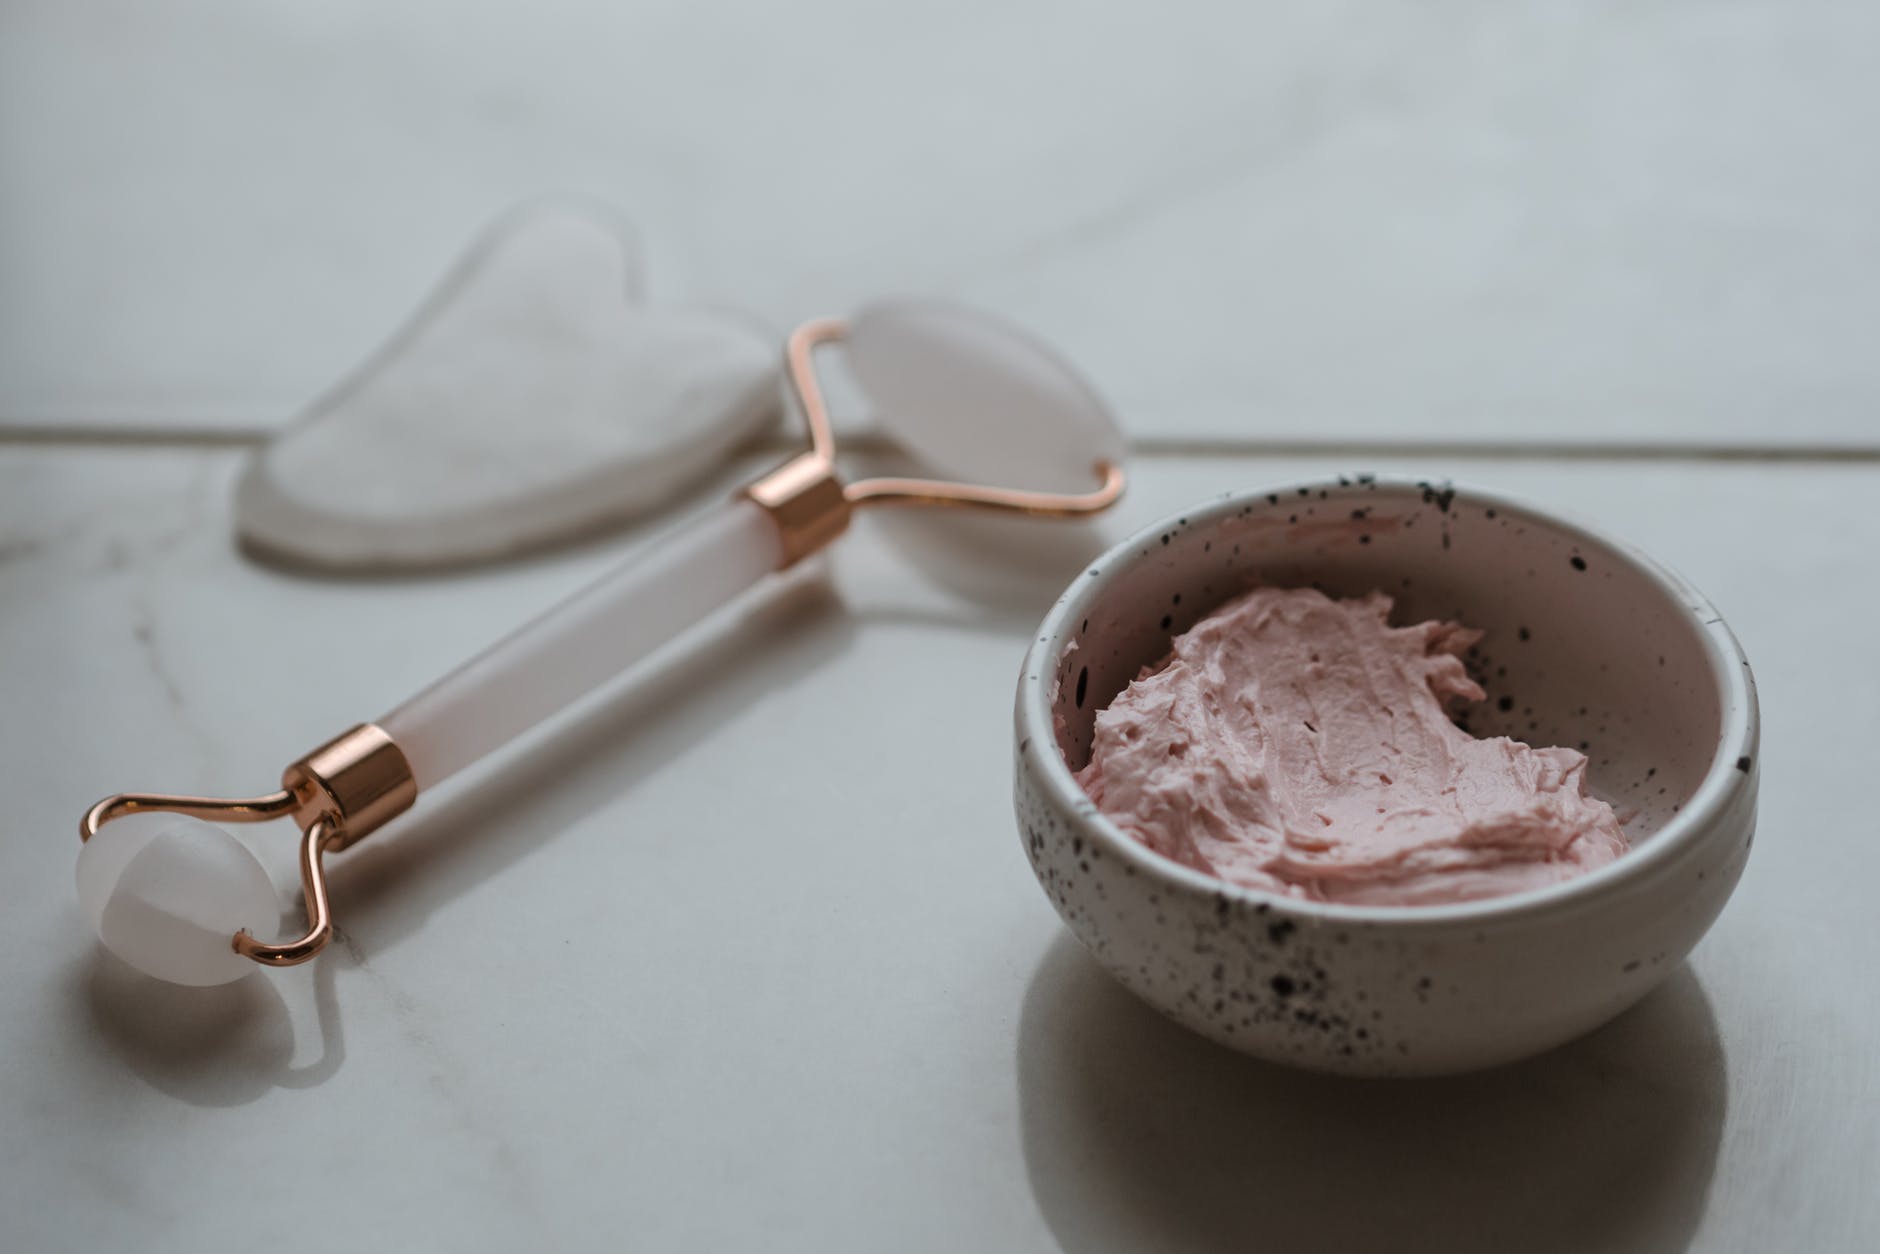 pink ice cream in white ceramic bowl